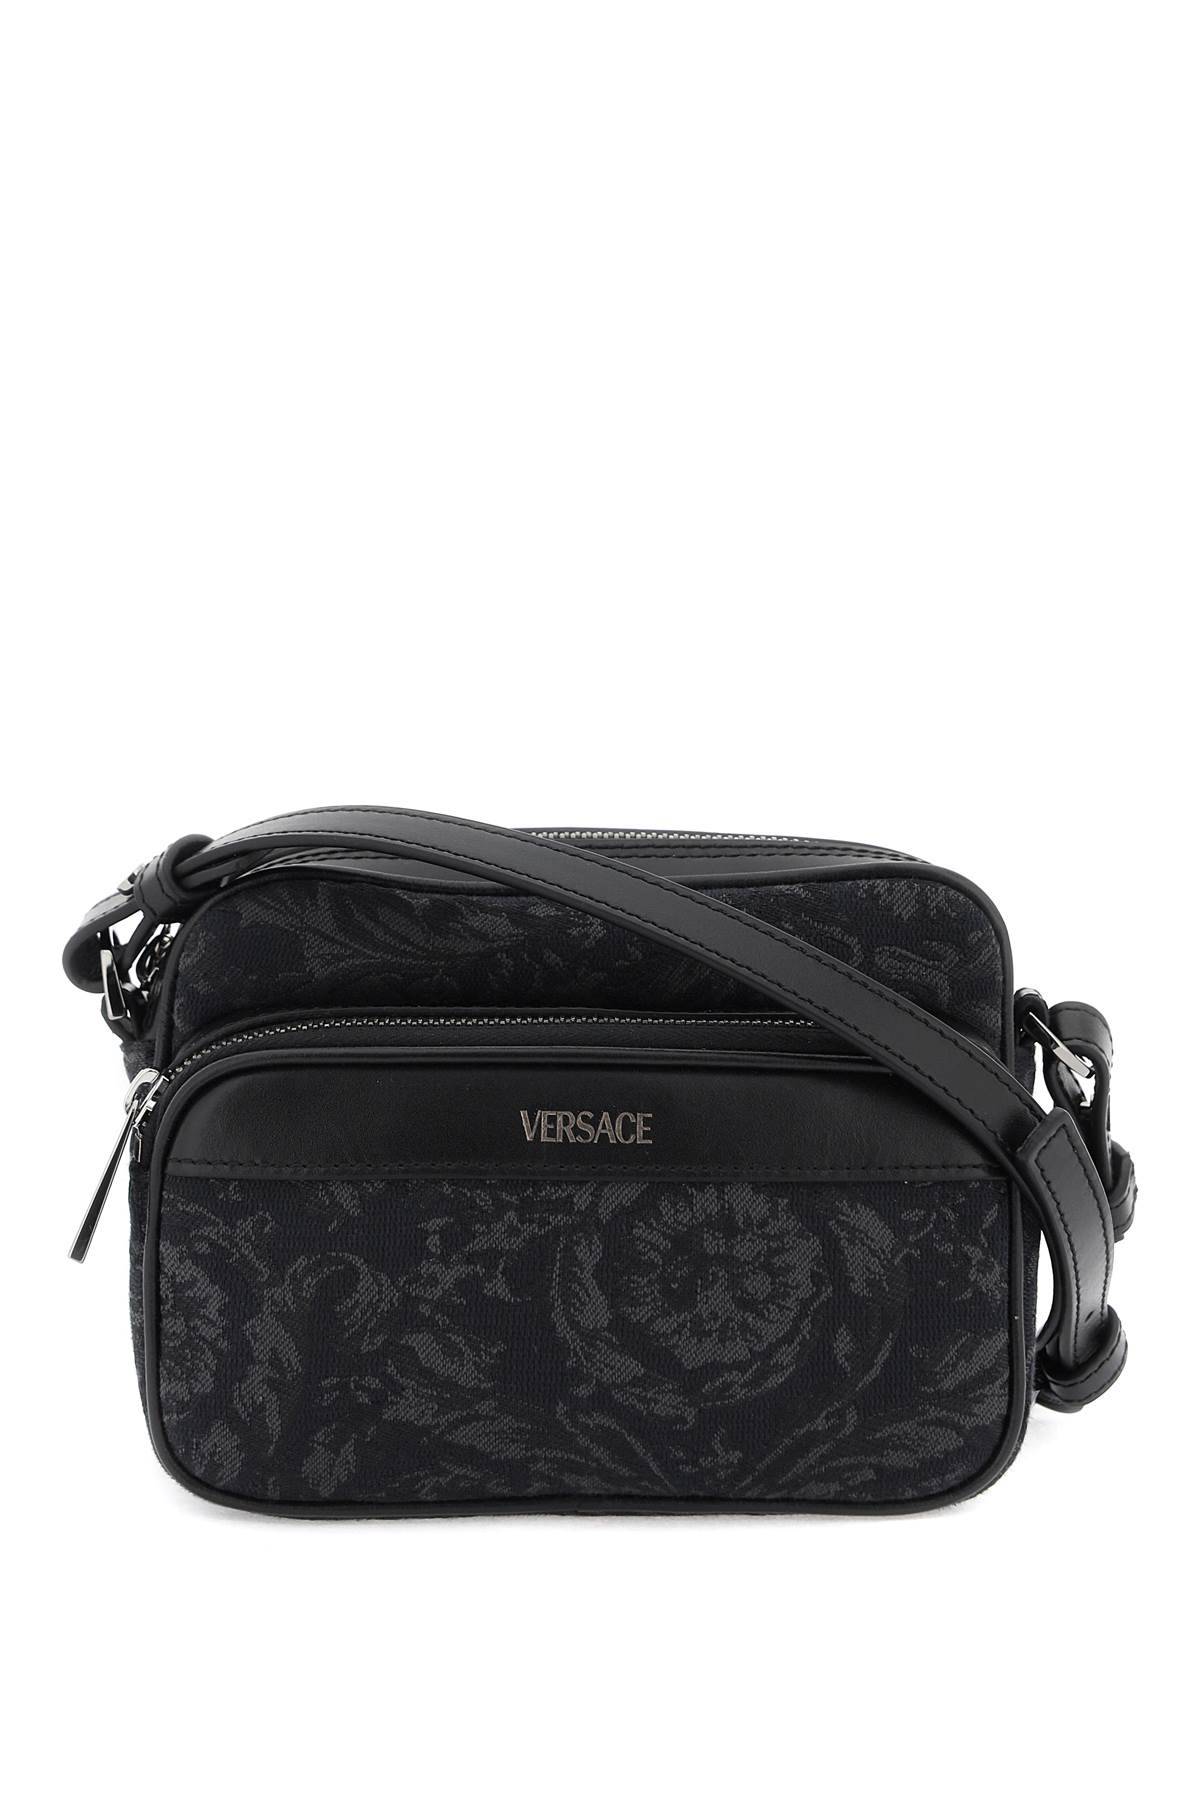 Versace VERSACE baroque messenger bag